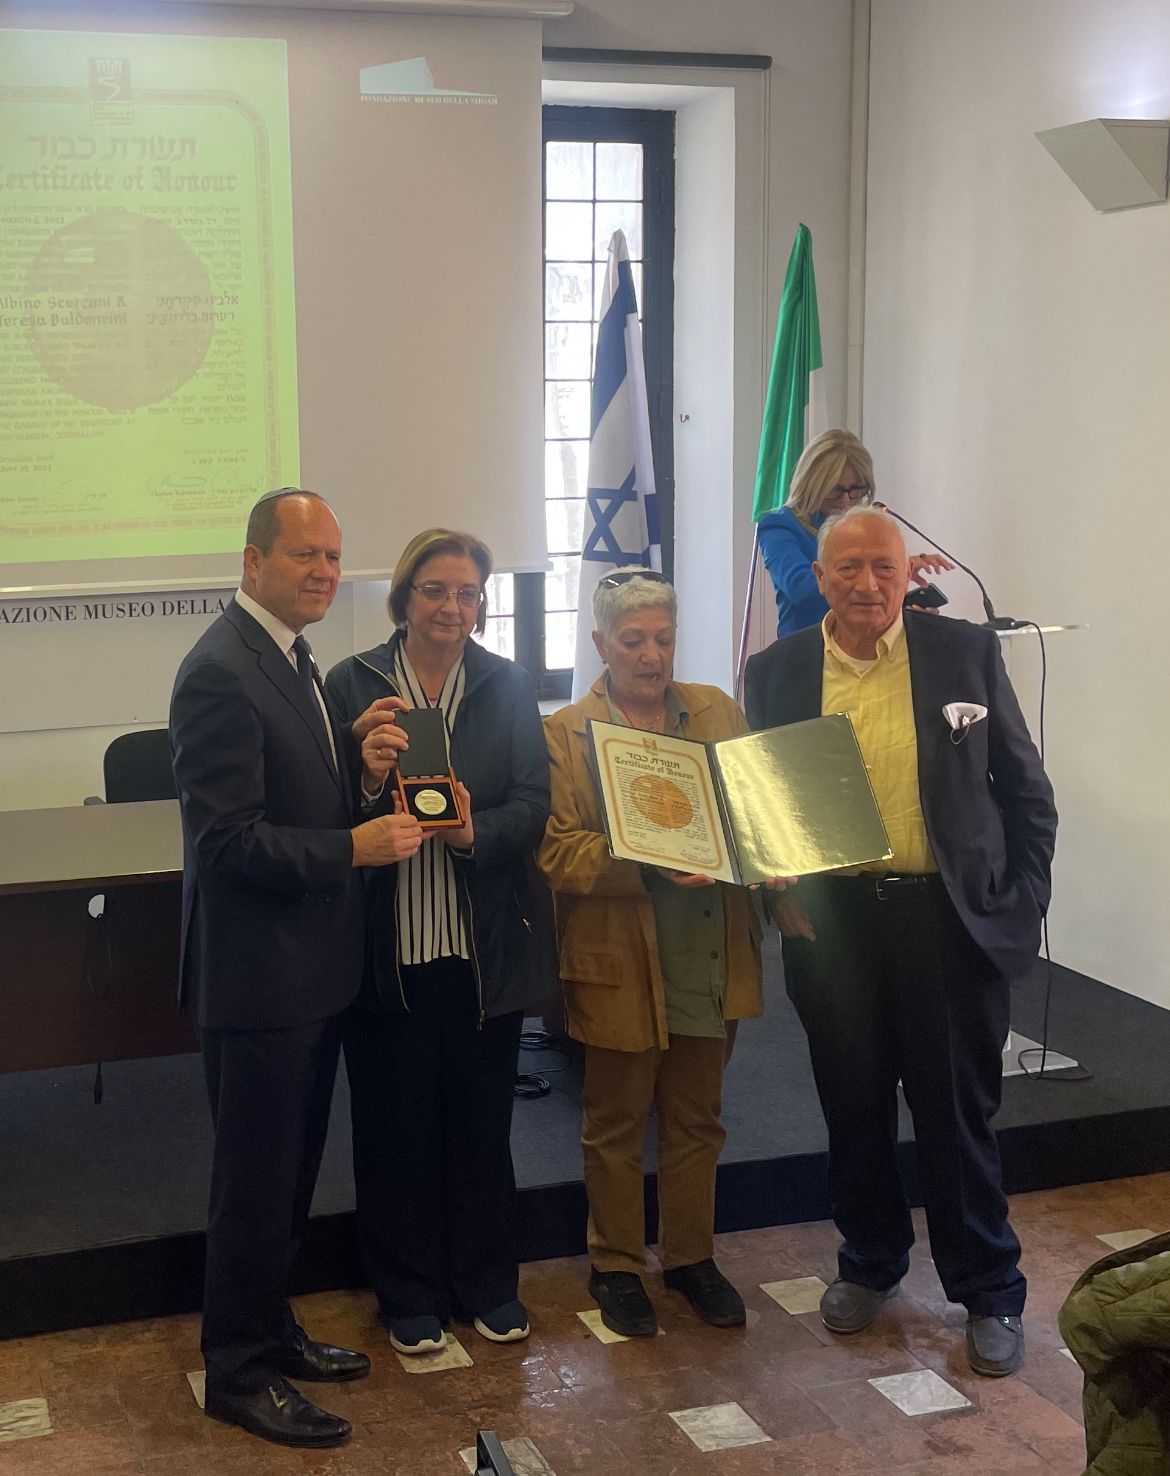 Albino Scorzoni e Teresa Baldoncini riconosciuti Giusti tra le Nazioni. Il ministro israeliano Barkat: “Loro sono il simbolo dell’eroismo”